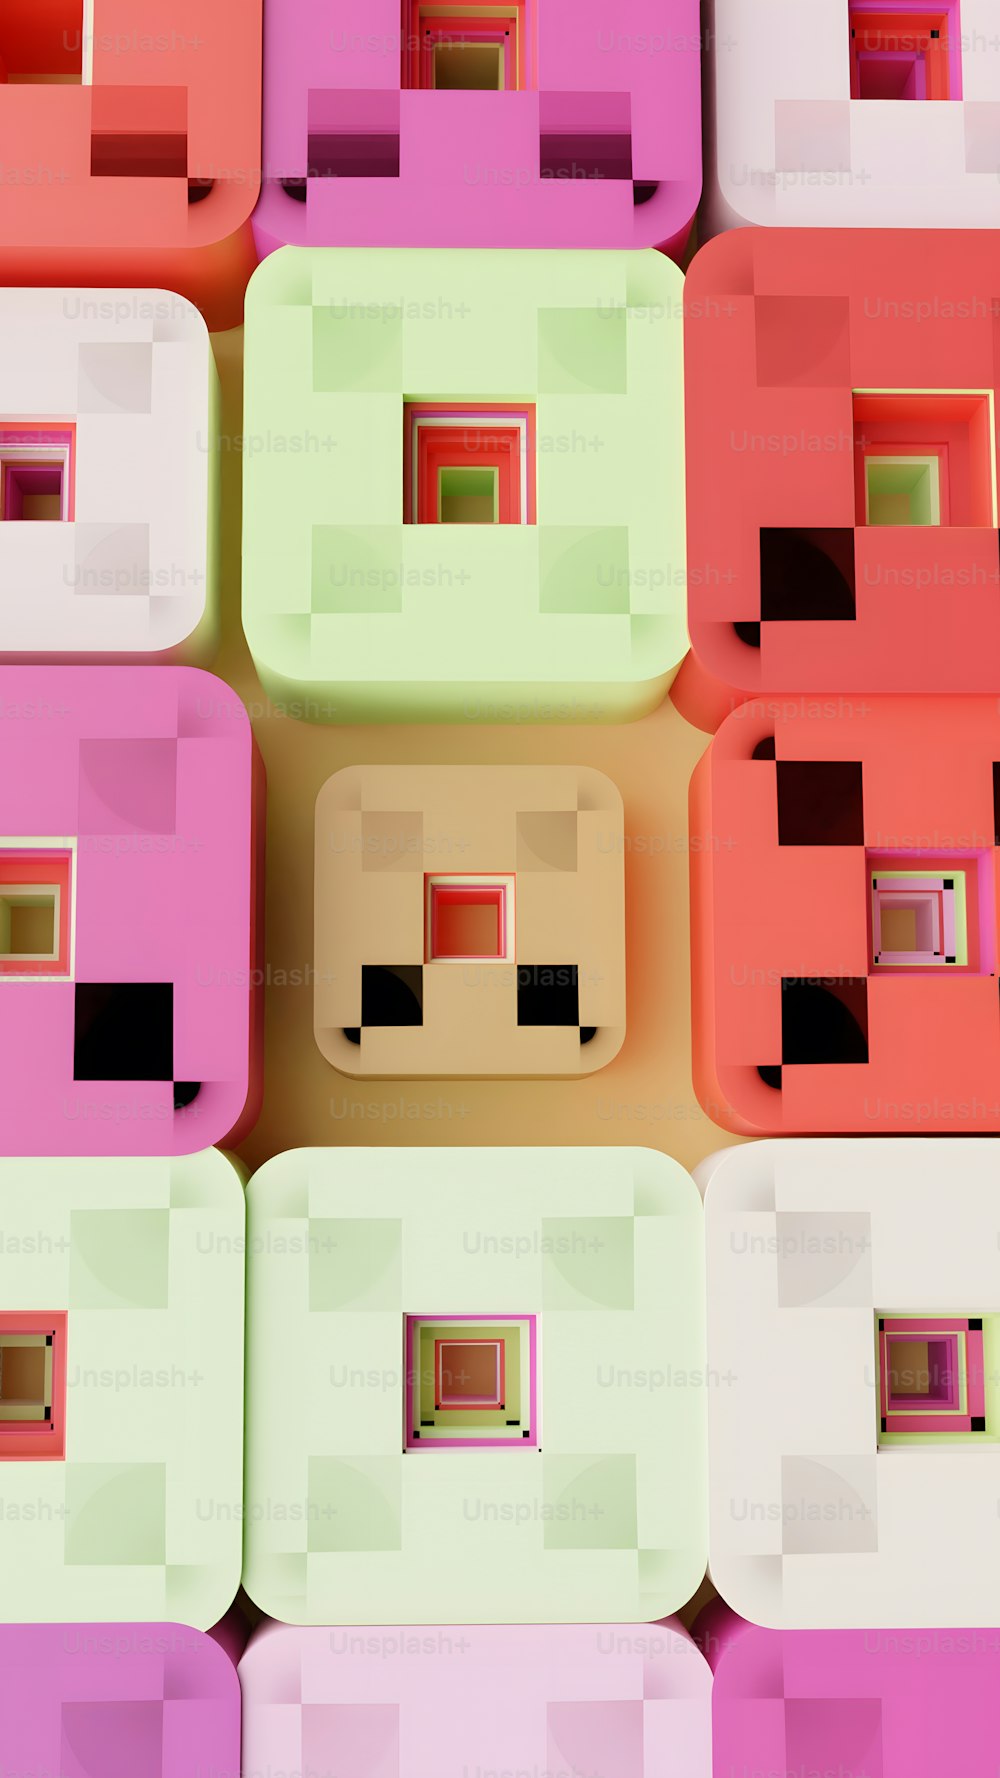 um grupo de blocos de cores diferentes sentados um ao lado do outro